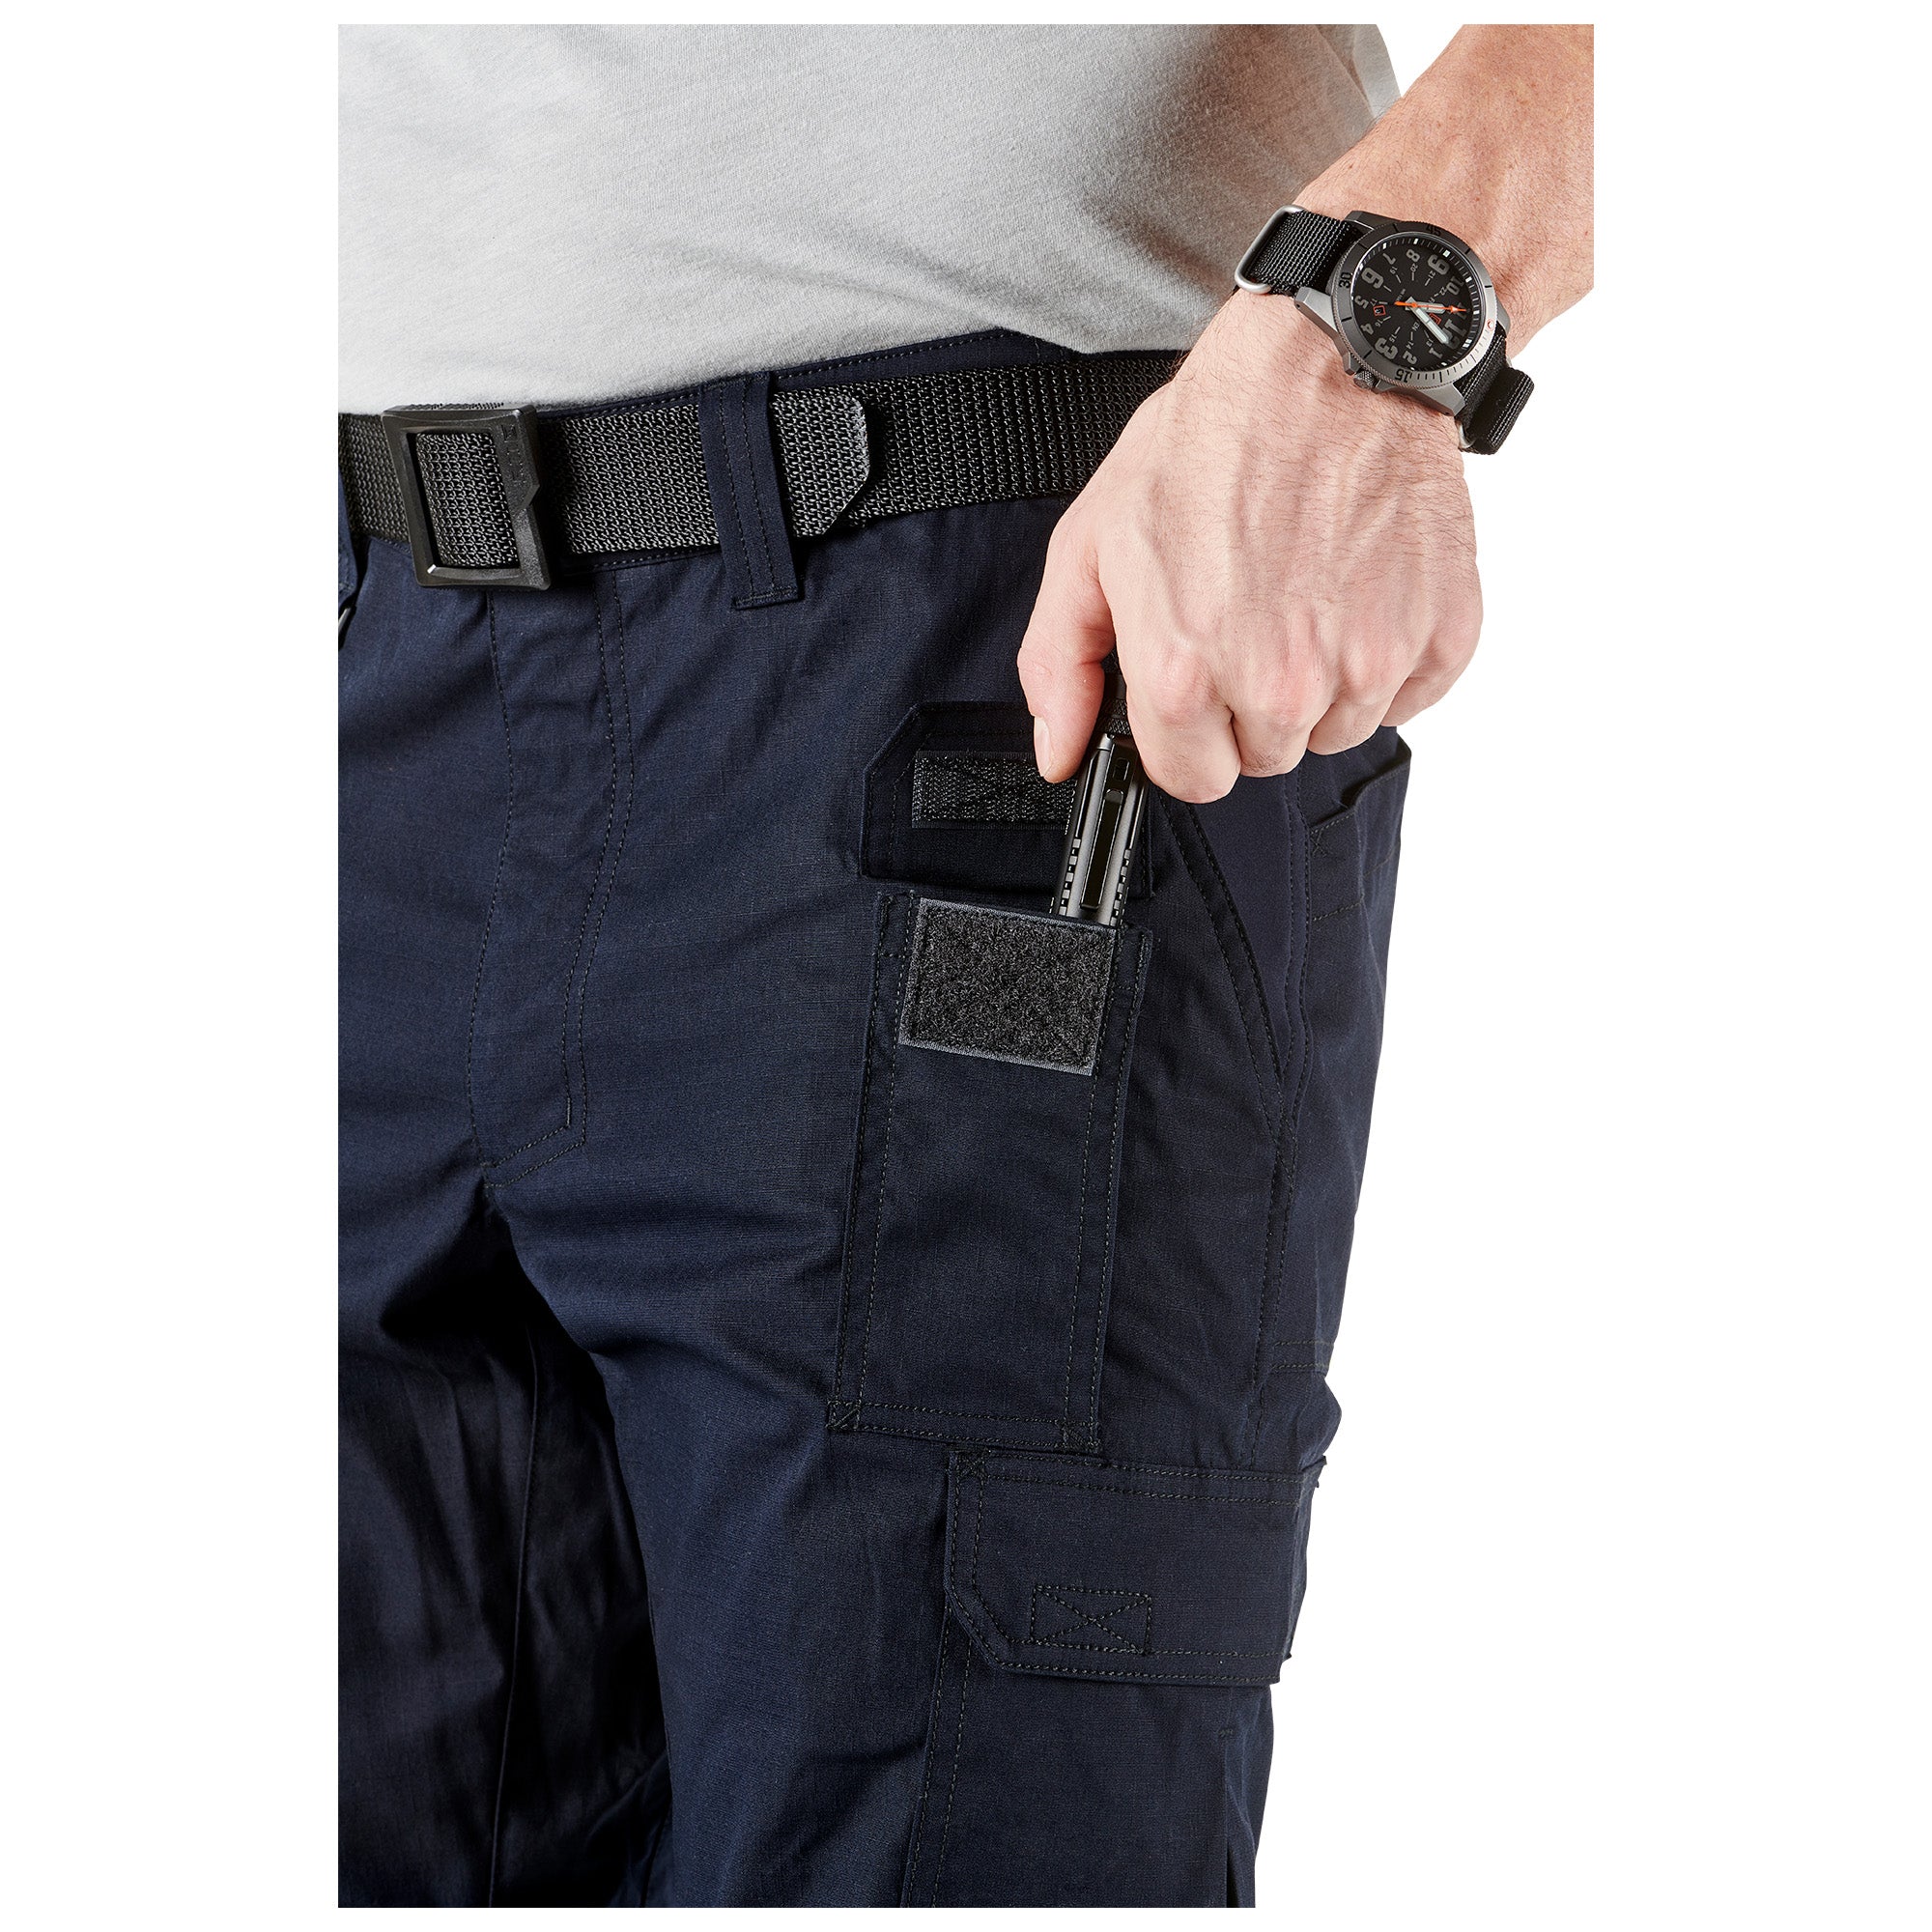 5.11 Tactical ABR Pro Pants - Dark Navy Pants 5.11 Tactical Tactical Gear Supplier Tactical Distributors Australia